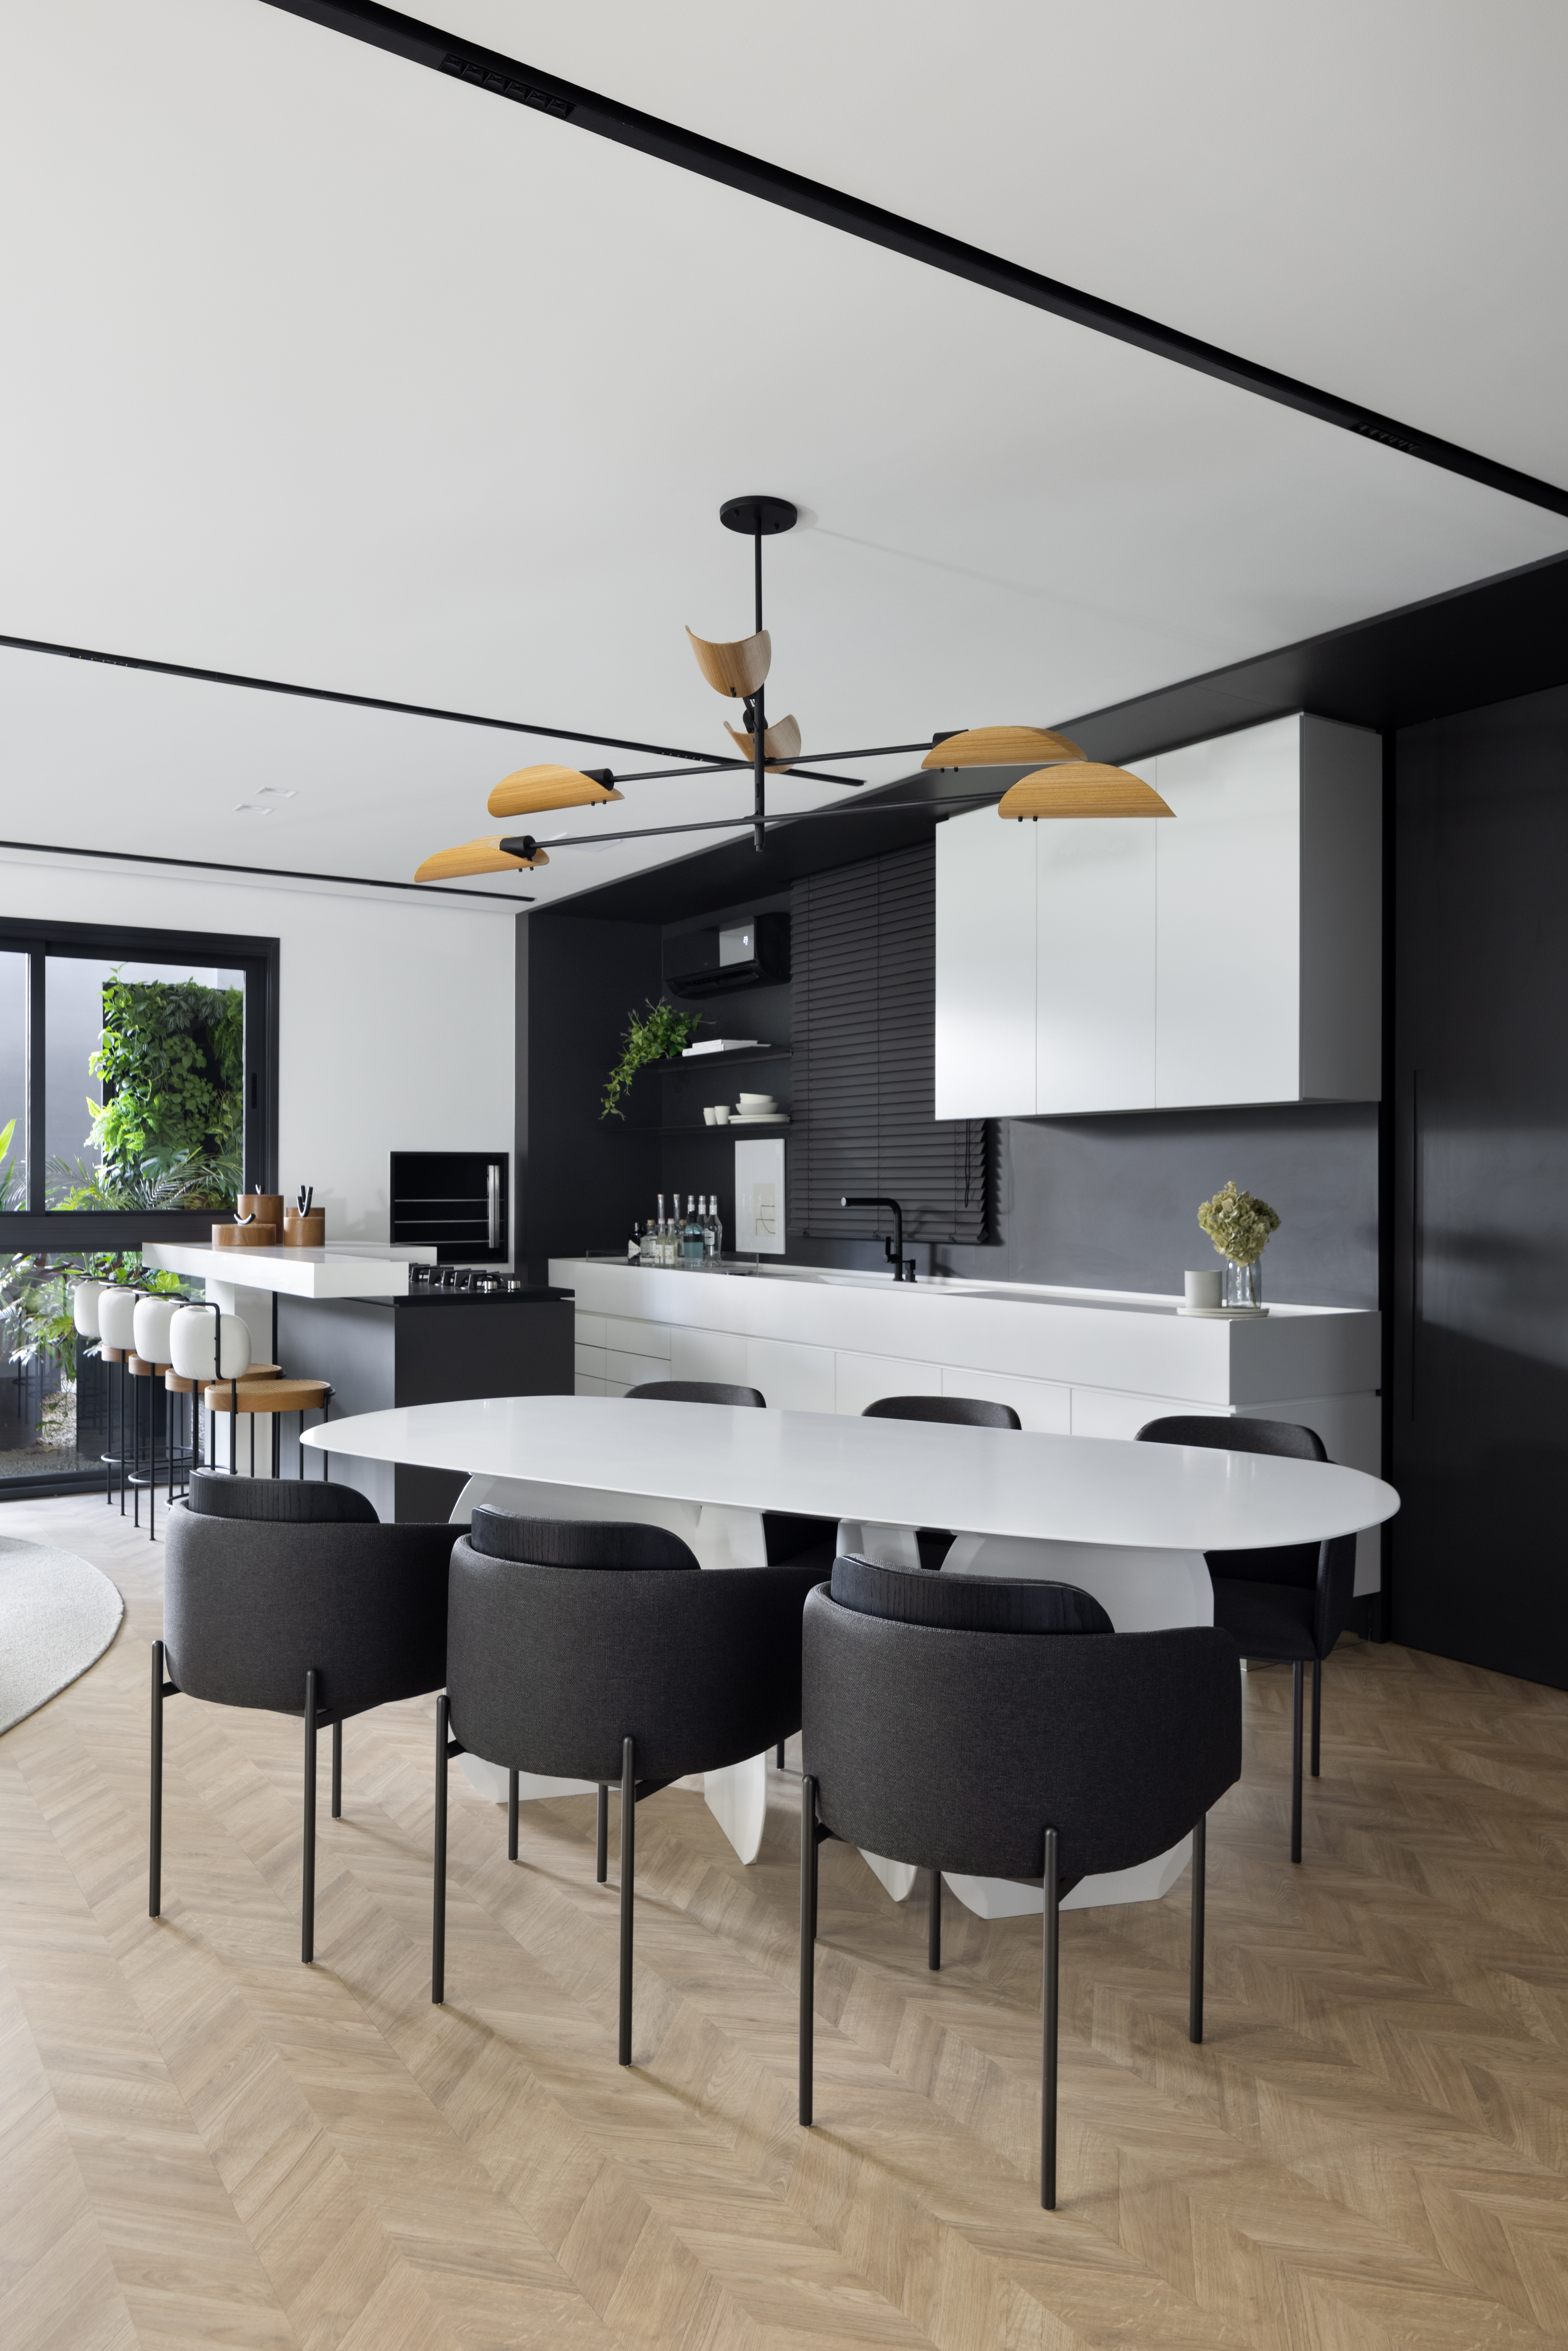 Apê de 142 m² tem paleta elegante de preto e branco e layout integrado. Projeto de Boher Arquitetos. Na foto, sala de jantar integrada com cozinha, mesa branca e cadeiras pretas.